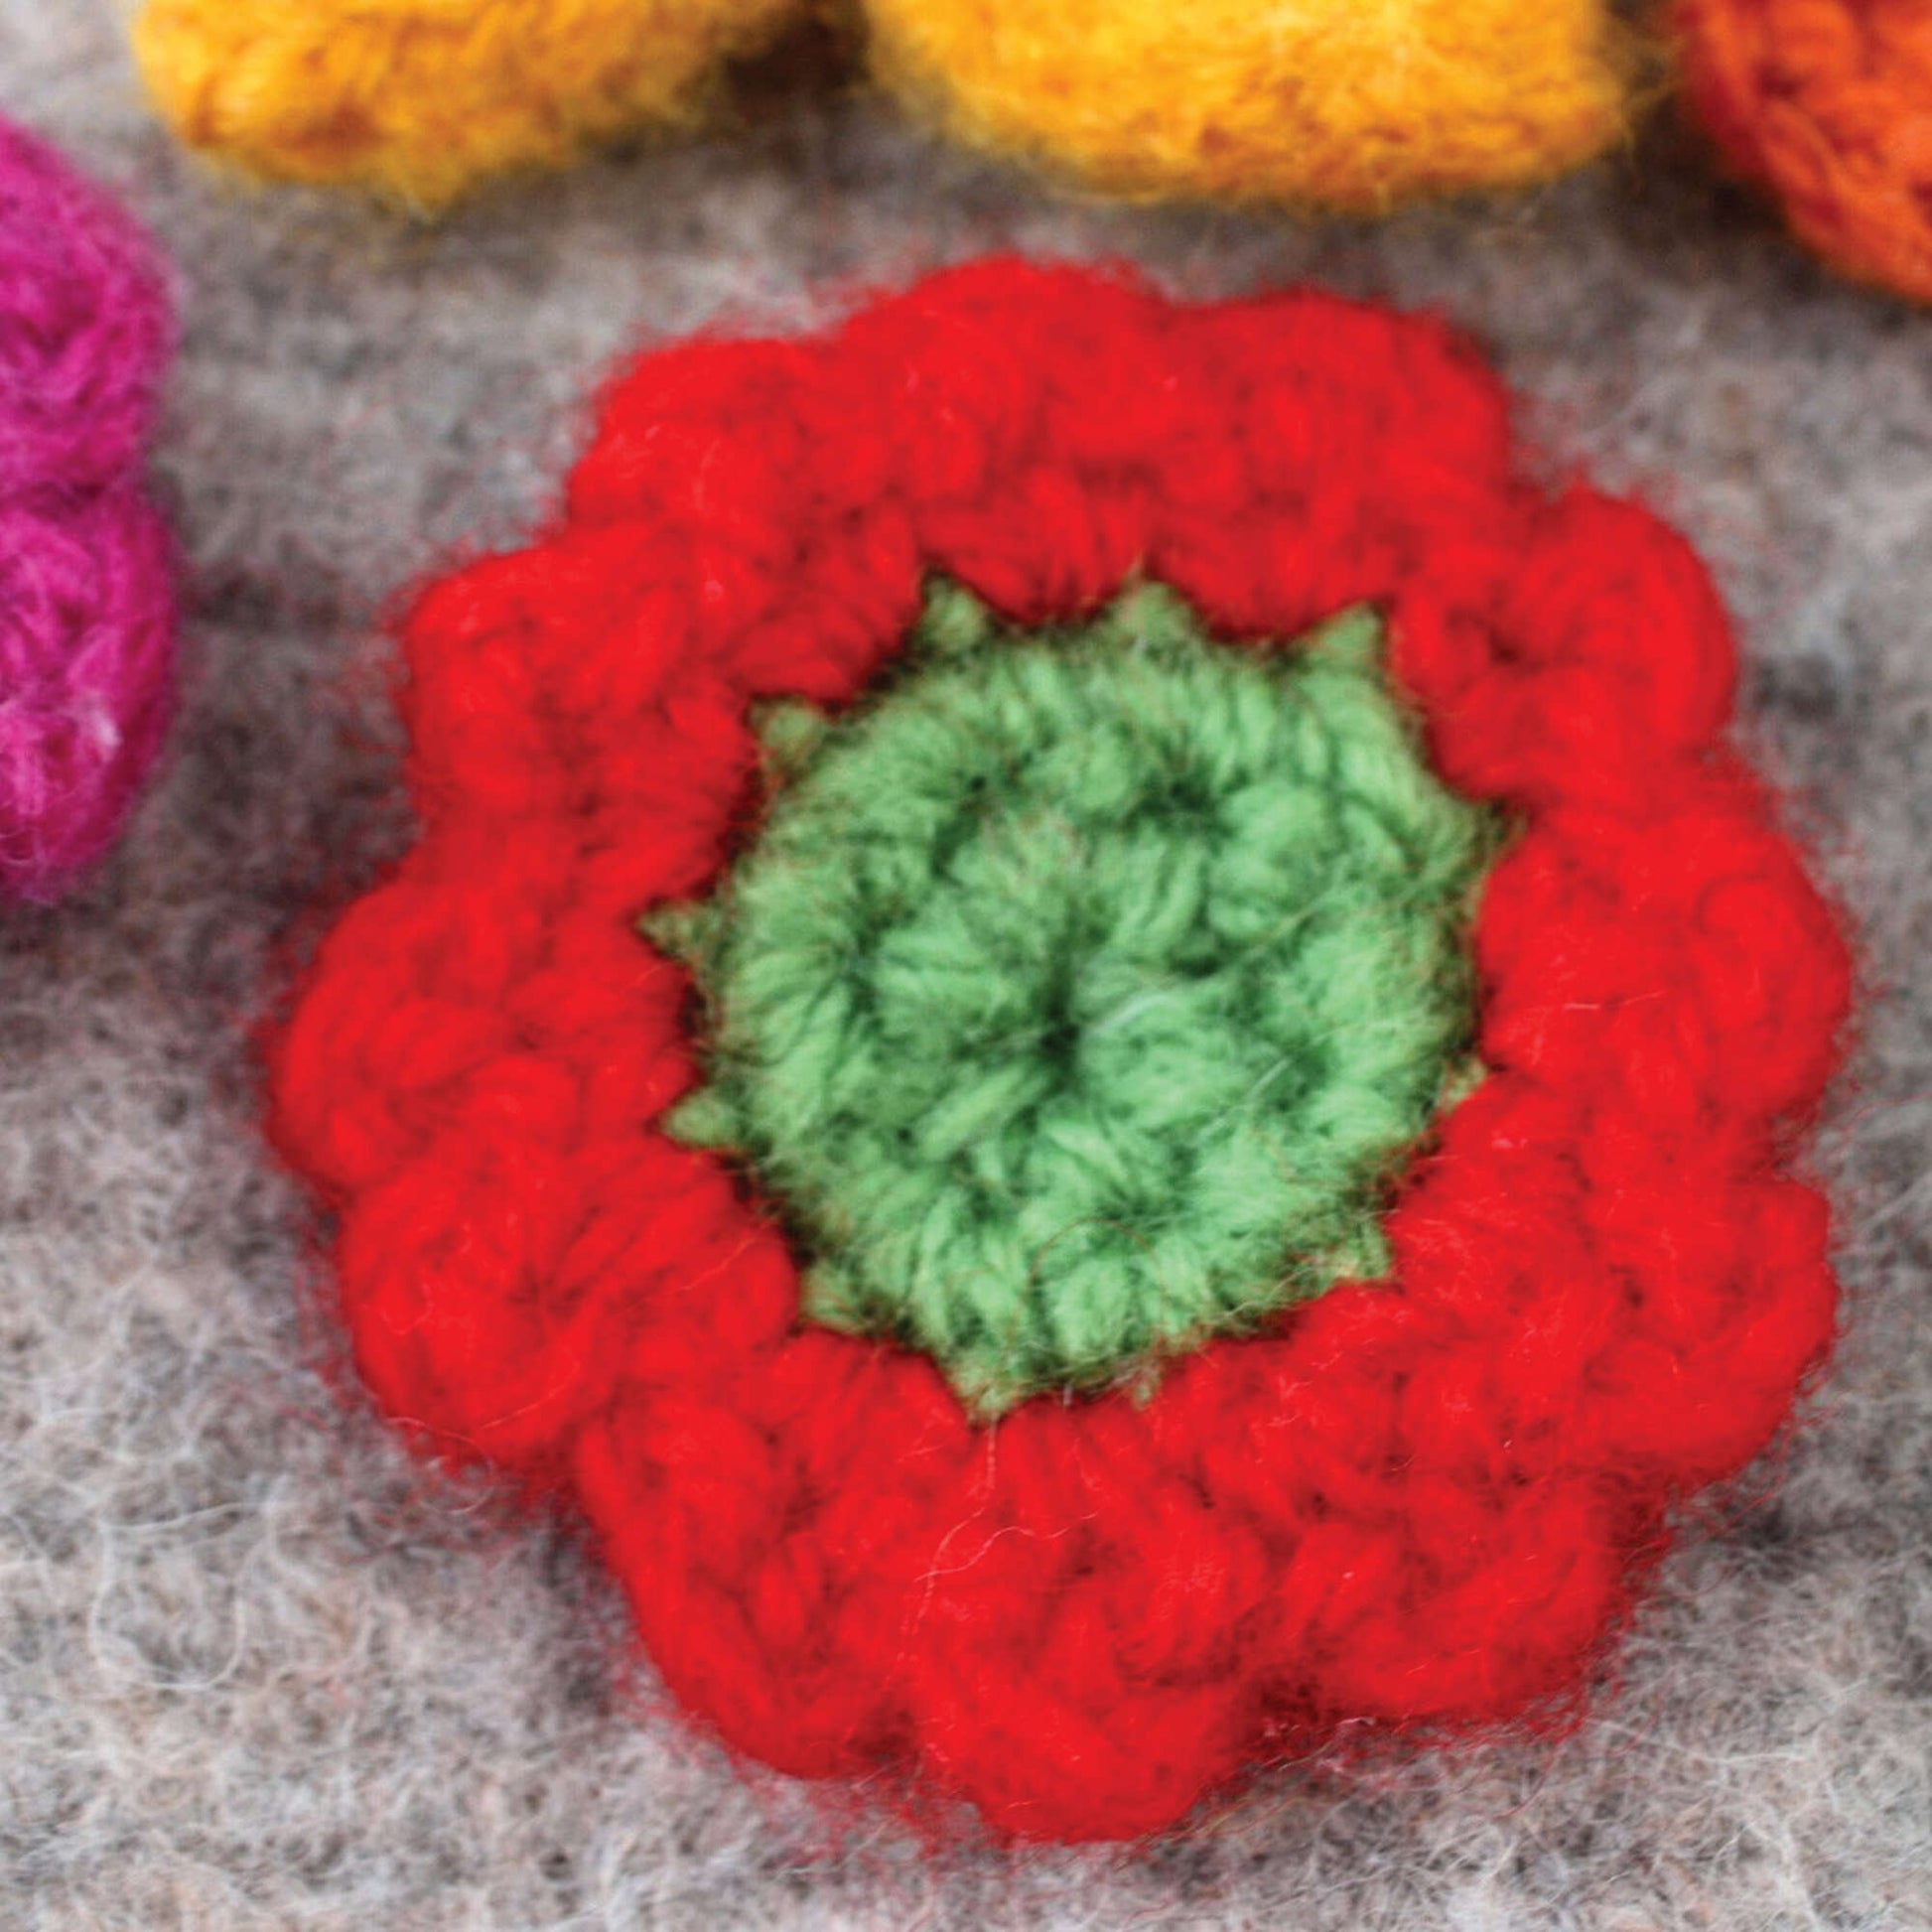 Free Patons Crochet Felt And Flower Tea Cozy Pattern